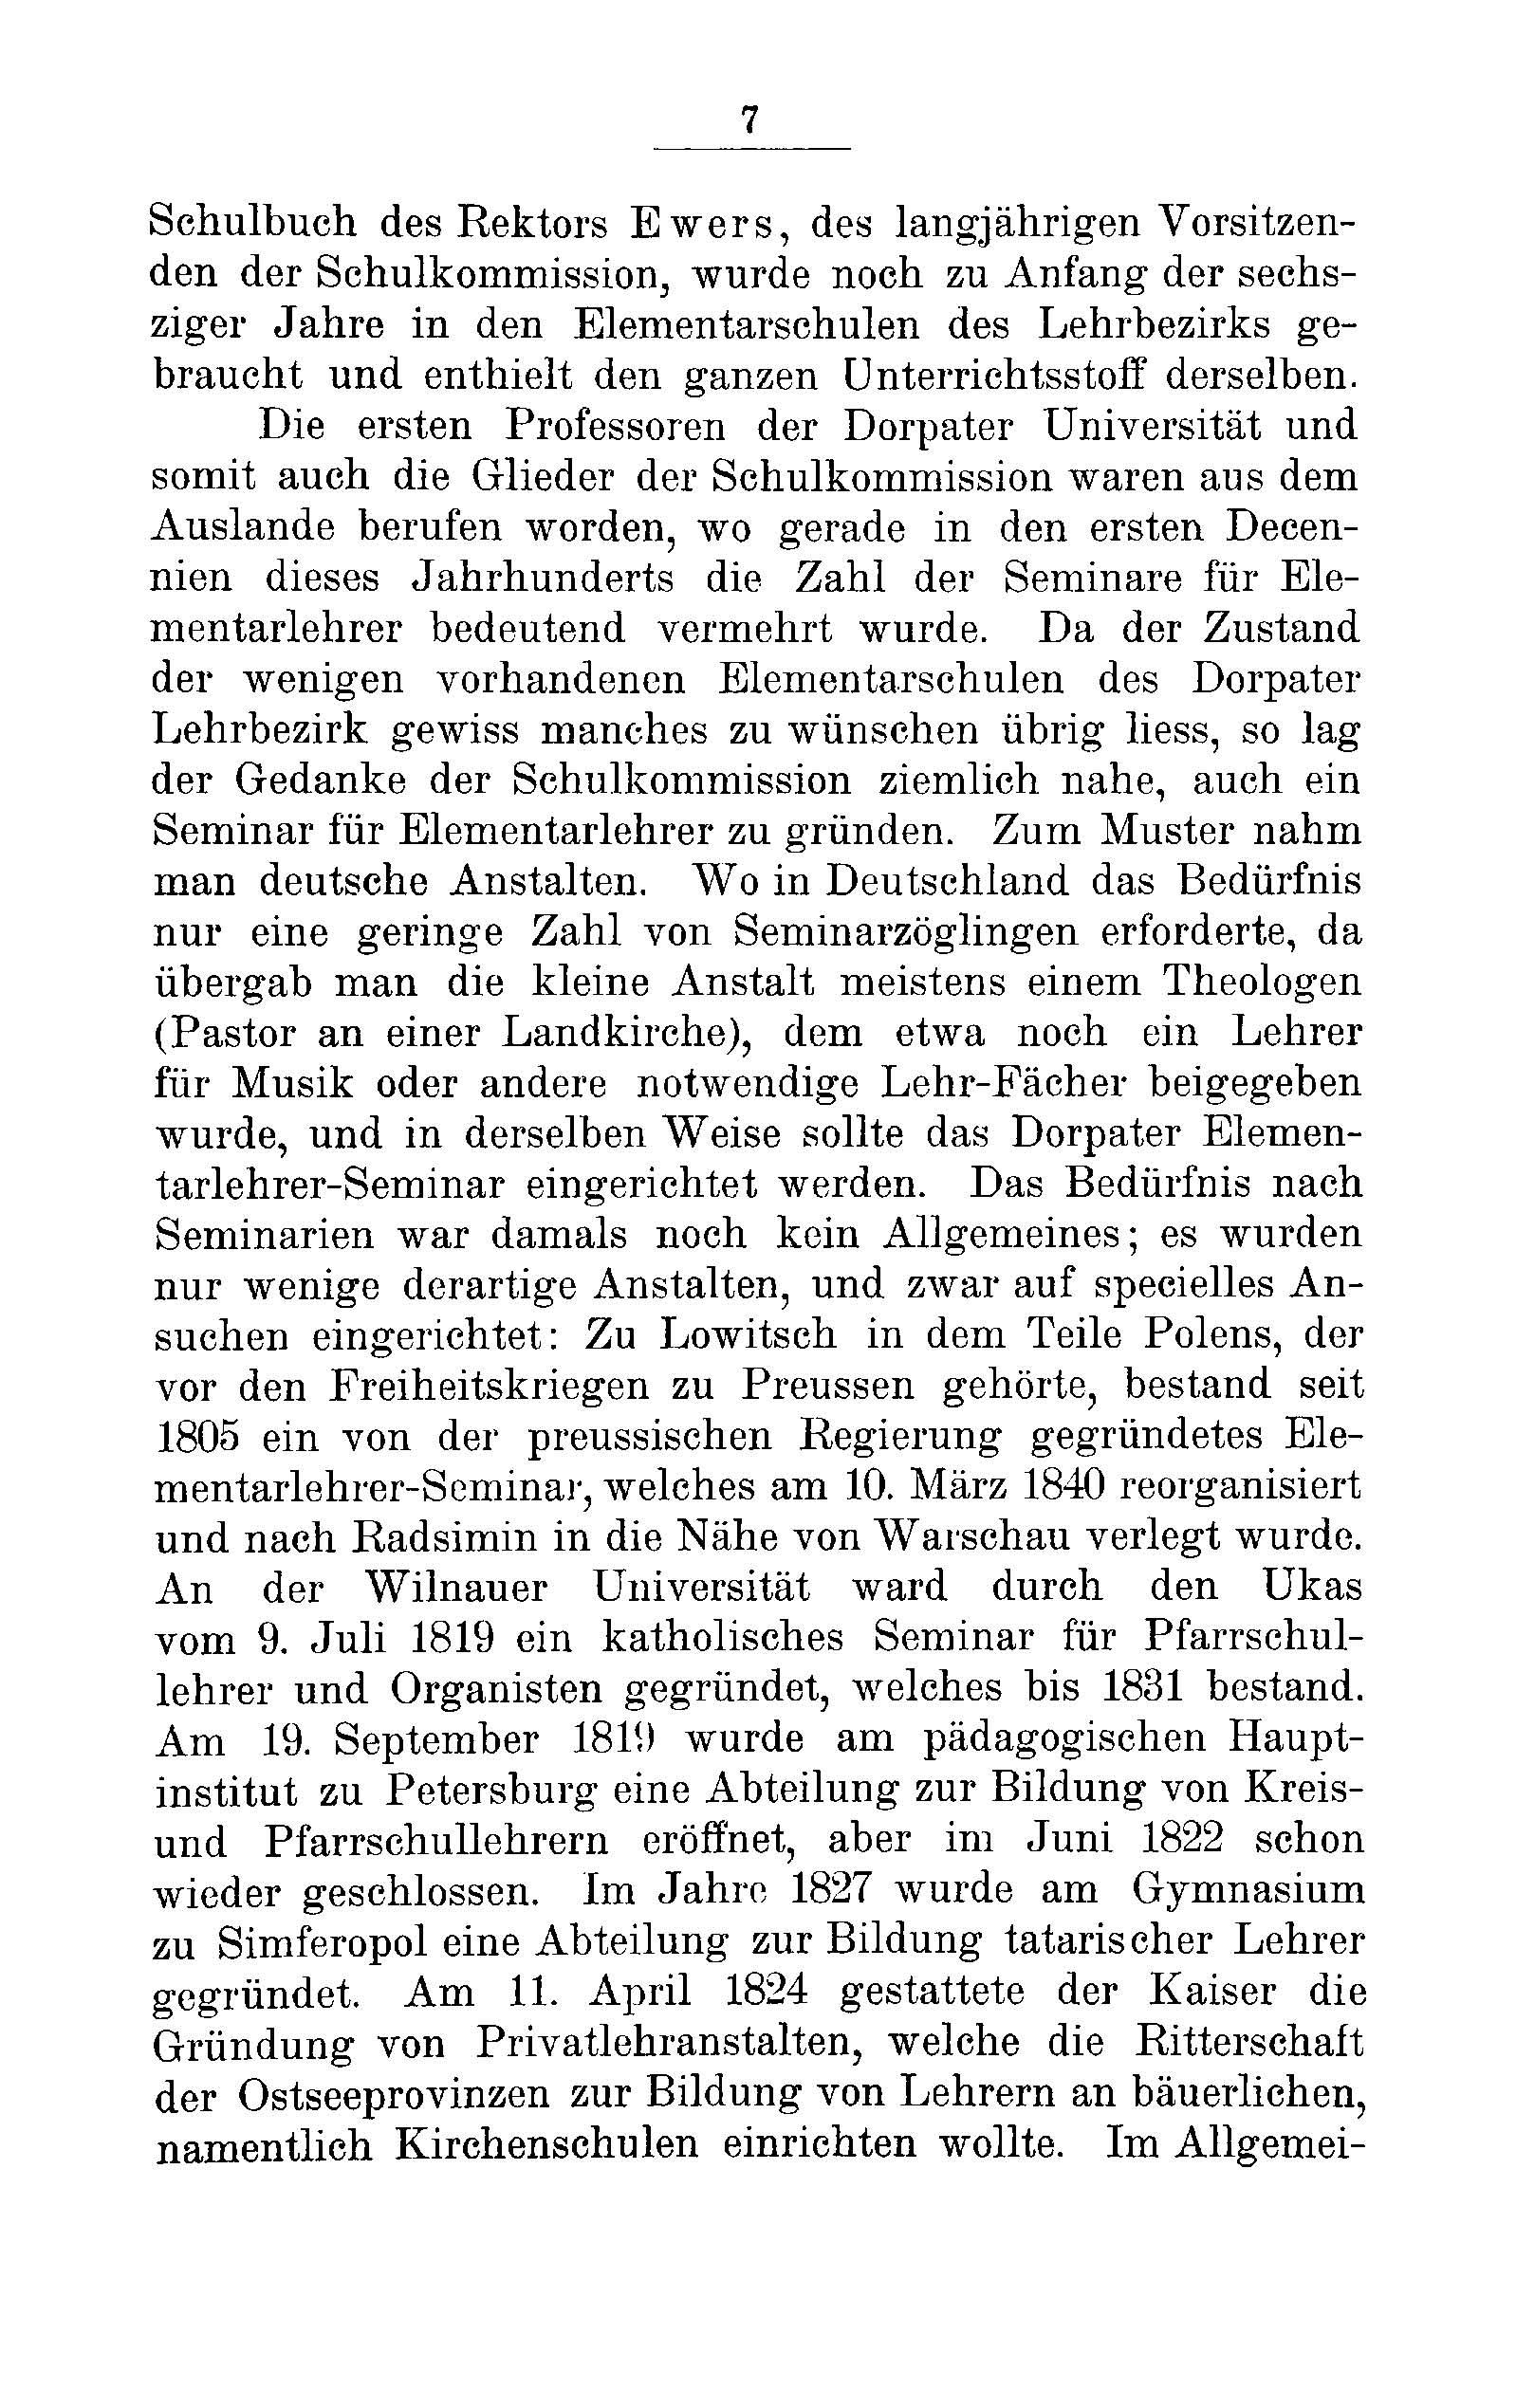 Das Erste Dorpatsche Lehrer-Seminar (1890) | 8. Main body of text